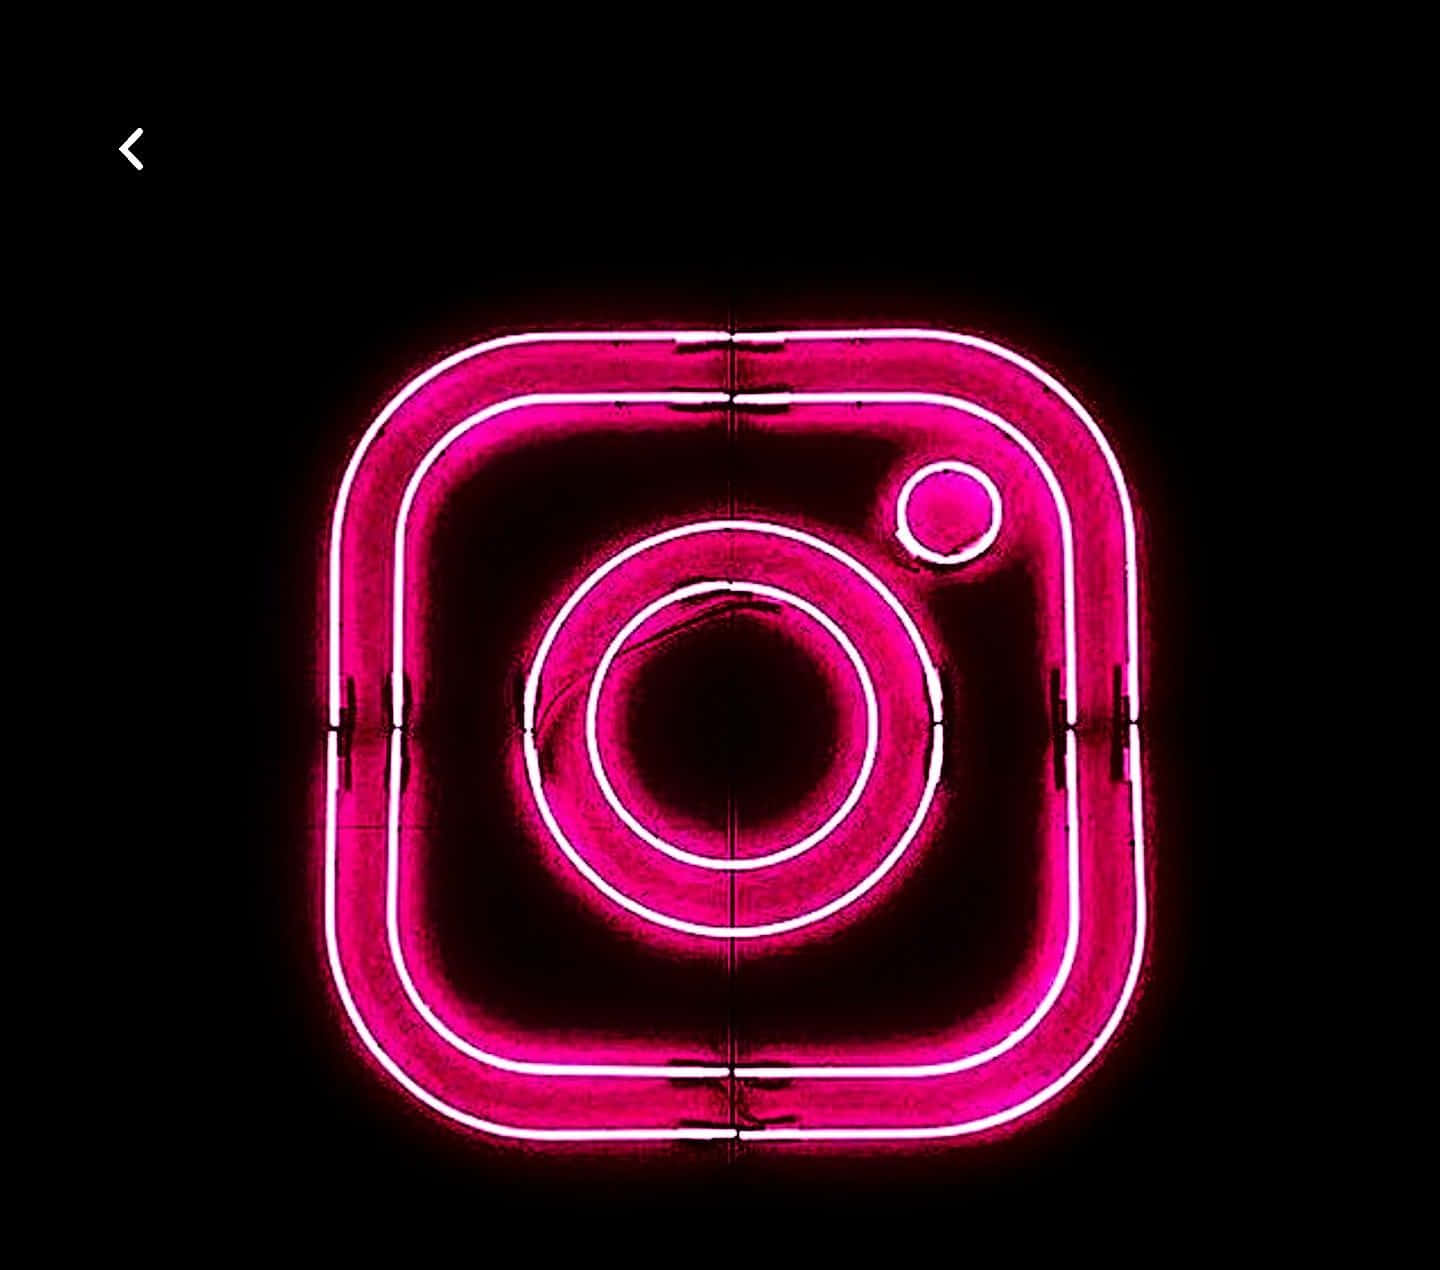 Imagendel Logo De Instagram En Color Rosa Neón.